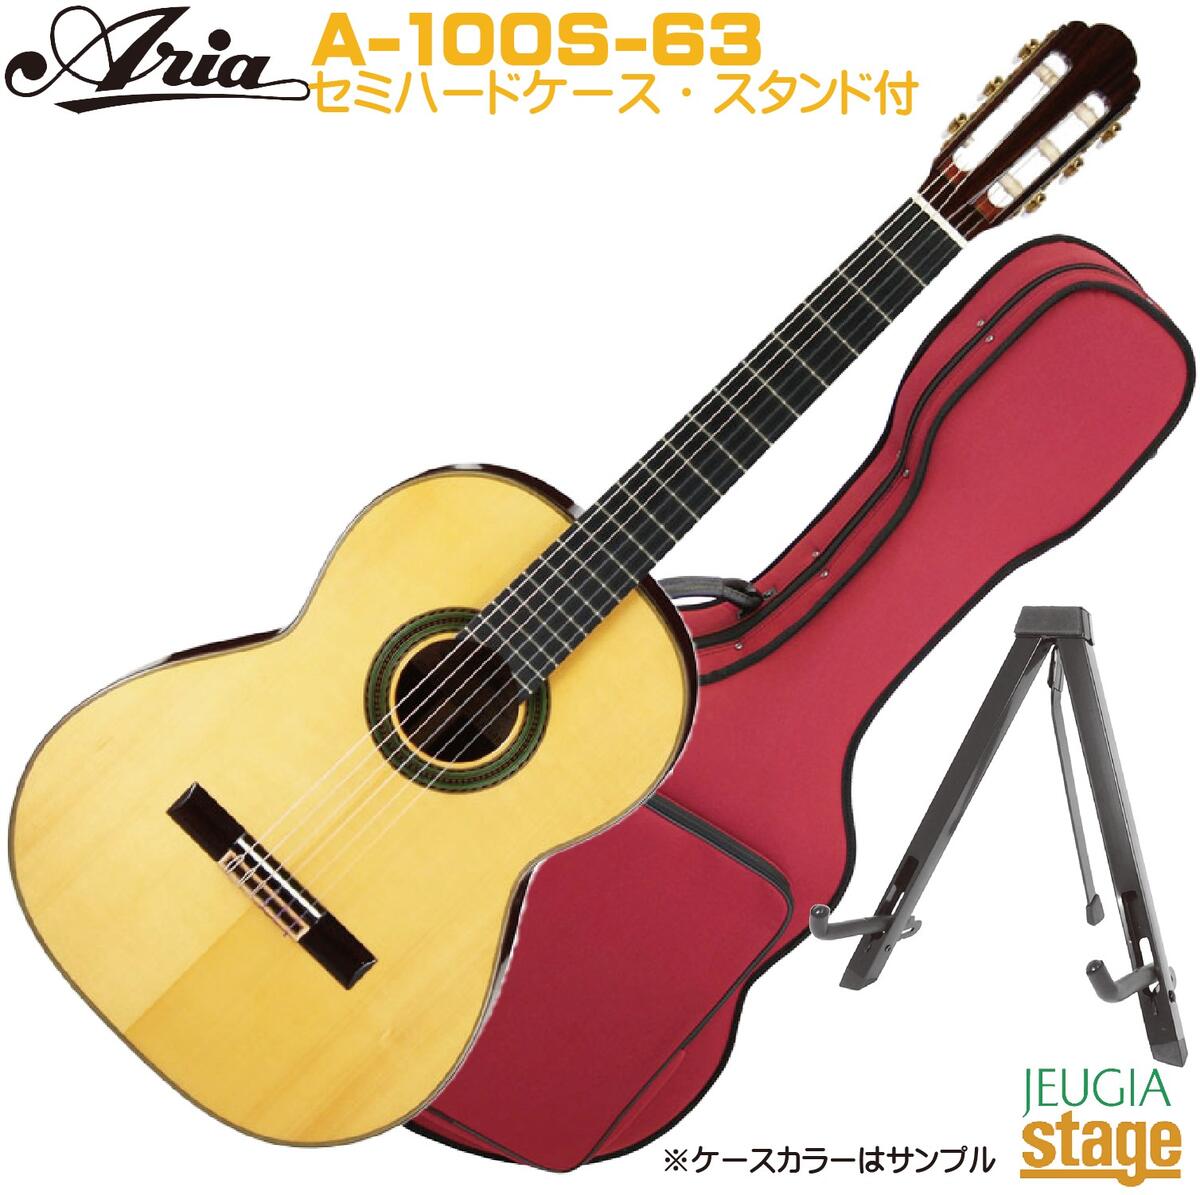 ARIA A-100S-63 弾き易い630mmスケールのクラシックギターで初めてや女性の方にもおすすめです。 スペックもオール単板、エボニー指板という本格仕様ながらも価格を抑えた大変人気のモデル。 上質なペグ、ウッドバインディングの採用など細かな点にもこだわって作られており、これからクラシックギターを始める人から上級者までお奨めできるラインナップとなっています。 ※お付けしているセミハードケースはサンプルのため、お届の際はカラーはランダムになります。掲載画像のものと若干仕様等異なる場合がありますが同等品グレードのものをお付け致します。 ARIA A-100S-63 Specs ・Top: Selected Solid Spruce ・Back & Sides: Solid Rosewood ・Neck: Mahogany ・Fingerboard: Ebony ・Scale: 630 mm ・Saddle&Nut: Bone ・Bridge: Rosewood ・Nut width: 50 mm (630mm Scale) ※商品画像はサンプルです。 ★掲載の商品は店頭や他のECサイトでも並行して販売しております。在庫情報の更新には最大限の努力をしておりますが、ご注文が完了しましても売り切れでご用意できない場合がございます。 　また、お取り寄せ商品の場合、生産完了・メーカー価格改定などの理由でご用意できない場合がございます。 　その際はご注文をキャンセルさせていただきますので、予めご了承くださいませ。 ★お届け先が北海道や沖縄、その他離島の場合、「送料無料」と表記の商品であっても別途中継料や送料を頂戴いたします。その際は改めてご連絡を差し上げますのでご了承ください。　